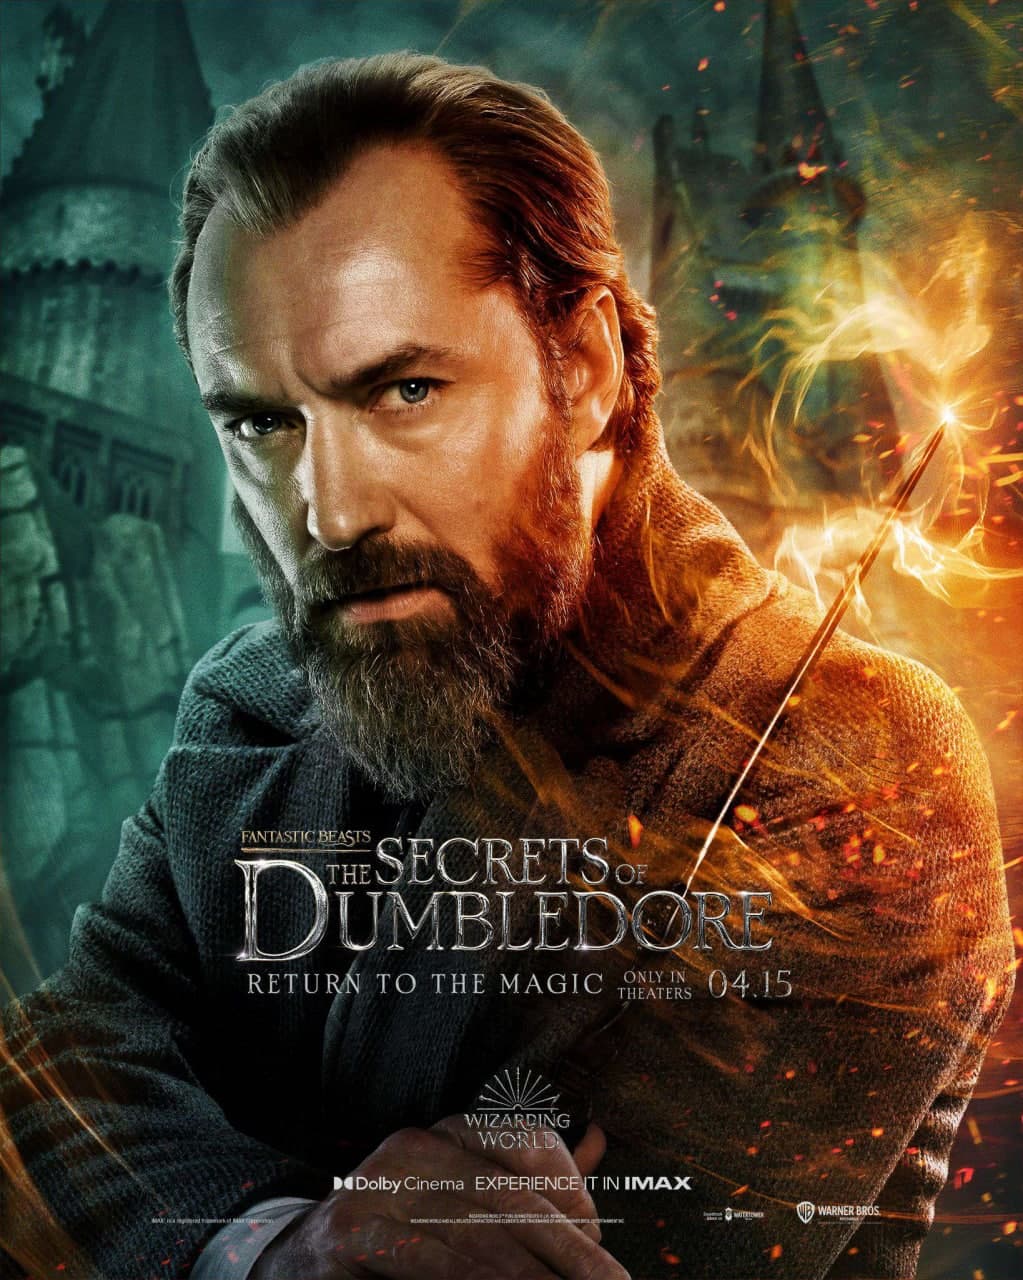 جود لاو در نقش دامبلدور در پوستر شخصیت فیلم Fantastic Beasts: The Secrets of Dumbledore